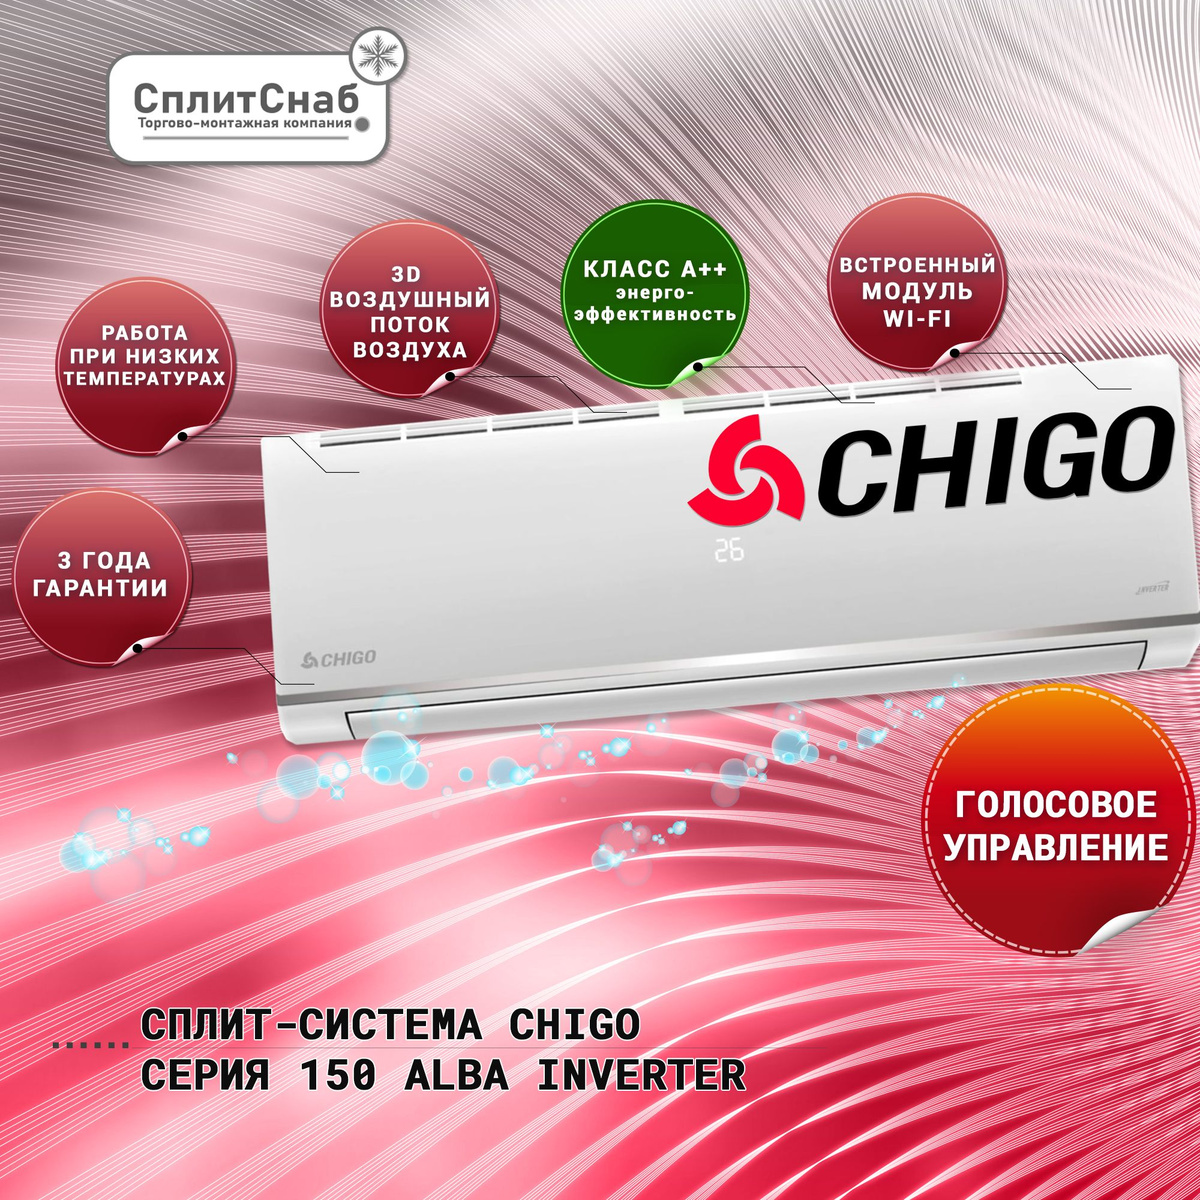 Сплит-система Chigo CS-61V3A-1D150 ALBA Inverter – это высококачественное оборудование для поддержания комфортной температуры в помещении. Благодаря использованию современных технологий и инверторной технологии, данная модель обеспечивает высокую энергоэффективность и экономичность в использовании.  Особенности сплит-системы Chigo CS-61V3A-1D150 ALBA Inverter:  Инверторная технология: обеспечивает более точное поддержание заданной температуры, а также экономию электроэнергии до 30% по сравнению с традиционными кондиционерами. Широкий диапазон рабочих температур: от -15°C до +50°C в режиме обогрева и от -10°C до +43°C в режиме охлаждения. Низкий уровень шума: благодаря инверторному компрессору и особой конструкции внутреннего и наружного блоков, уровень шума составляет всего 25 дБ. Многоступенчатая система фильтрации: включает в себя фильтр предварительной очистки, угольный фильтр и фильтр с ионами серебра, что обеспечивает эффективное удаление пыли, неприятных запахов и вредных микроорганизмов. Автоматический режим работы: позволяет поддерживать заданную температуру в помещении без вмешательства пользователя.  Серия 150 Alba Inverter кондиционеров Chigo предлагает высокое качество и эффективность охлаждения, обогрева и вентиляции воздуха. Эти кондиционеры оснащены инверторным компрессором, который позволяет точно контролировать температуру и обеспечивает более высокую энергоэффективность по сравнению с традиционными кондиционерами.  Основные характеристики серии 150 Alba Inverter включают:  – Энергоэффективность класса А++: эти кондиционеры обеспечивают высочайшую энергоэффективность, что приводит к снижению затрат на электроэнергию. – Режимы охлаждения, обогрева, вентиляции и осушения: вы можете выбрать подходящий режим для создания комфортной атмосферы в вашем доме. – Функция автоматического перезапуска: в случае отключения электроэнергии кондиционер автоматически перезапустится с теми же настройками, которые были до сбоя питания. – Большой диапазон рабочих температур: кондиционеры серии 150 могут работать в широком диапазоне температур, обеспечивая комфортное охлаждение или обогрев в любое время года. – Бесшумная работа: благодаря инверторной технологии, эти кондиционеры работают очень тихо, обеспечивая комфорт и спокойствие в вашем доме. Серия 150 Chigo Alba Inverter предлагает отличное сочетание функциональности, энергоэффективности и комфорта. Если вы ищете надежный и эффективный кондиционер, то эти модели могут стать отличным выбором для вашего дома.